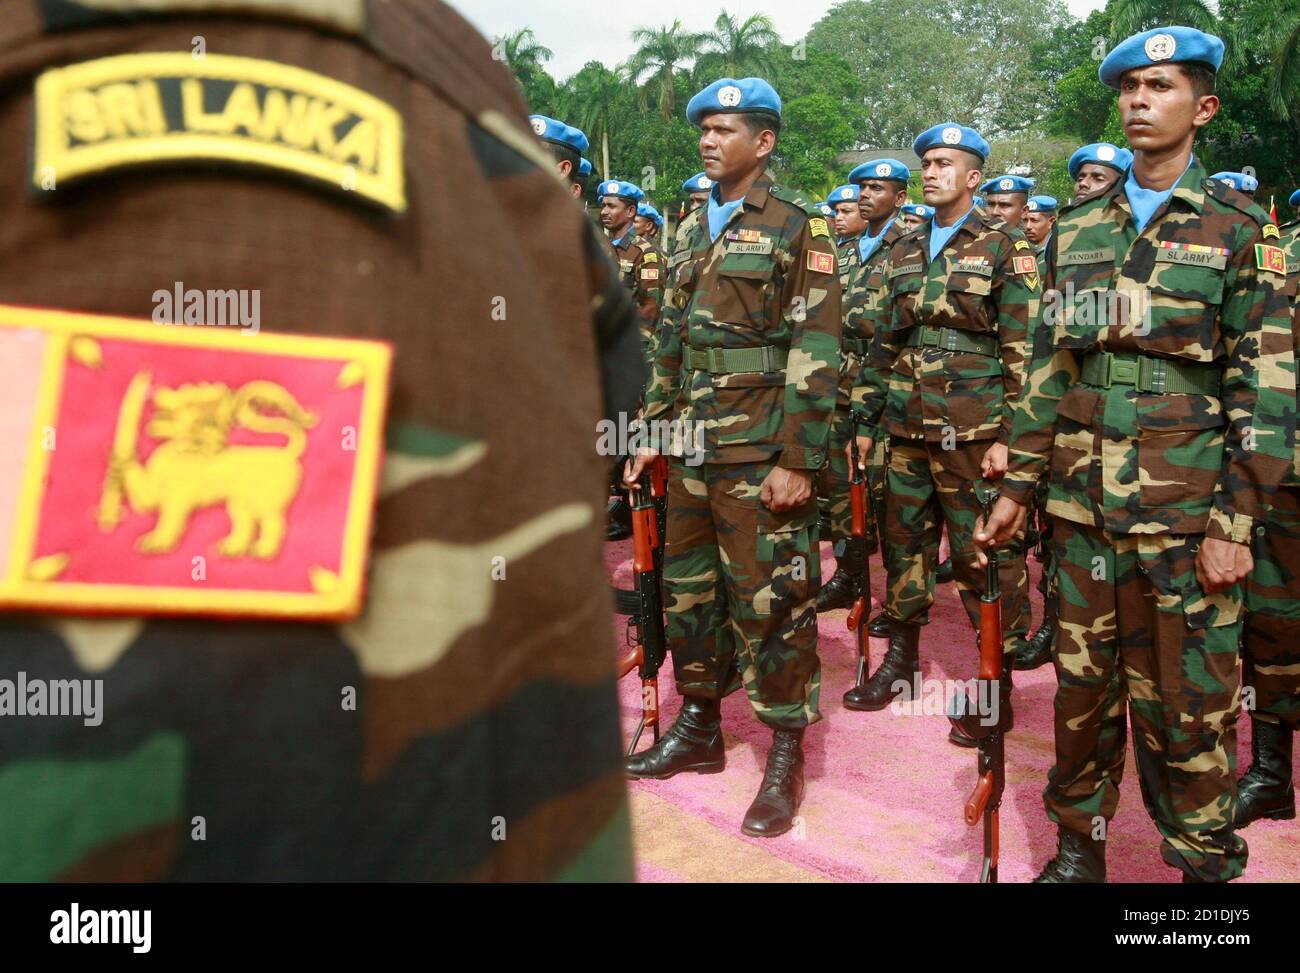 Des soldats assistent à une parade de la force de maintien de la paix des Nations Unies au Sri Lanka dans le cantonnement de l'armée, dans la banlieue de Colombo, à Panagoda, le 3 décembre 2008. Environ 748 militaires ont terminé leur formation et se joindront à la force de maintien de la paix d'Haïti plus tard ce mois-ci, selon un porte-parole militaire. REUTERS/Buddhika Weerasinghe (SRI LANKA) Banque D'Images